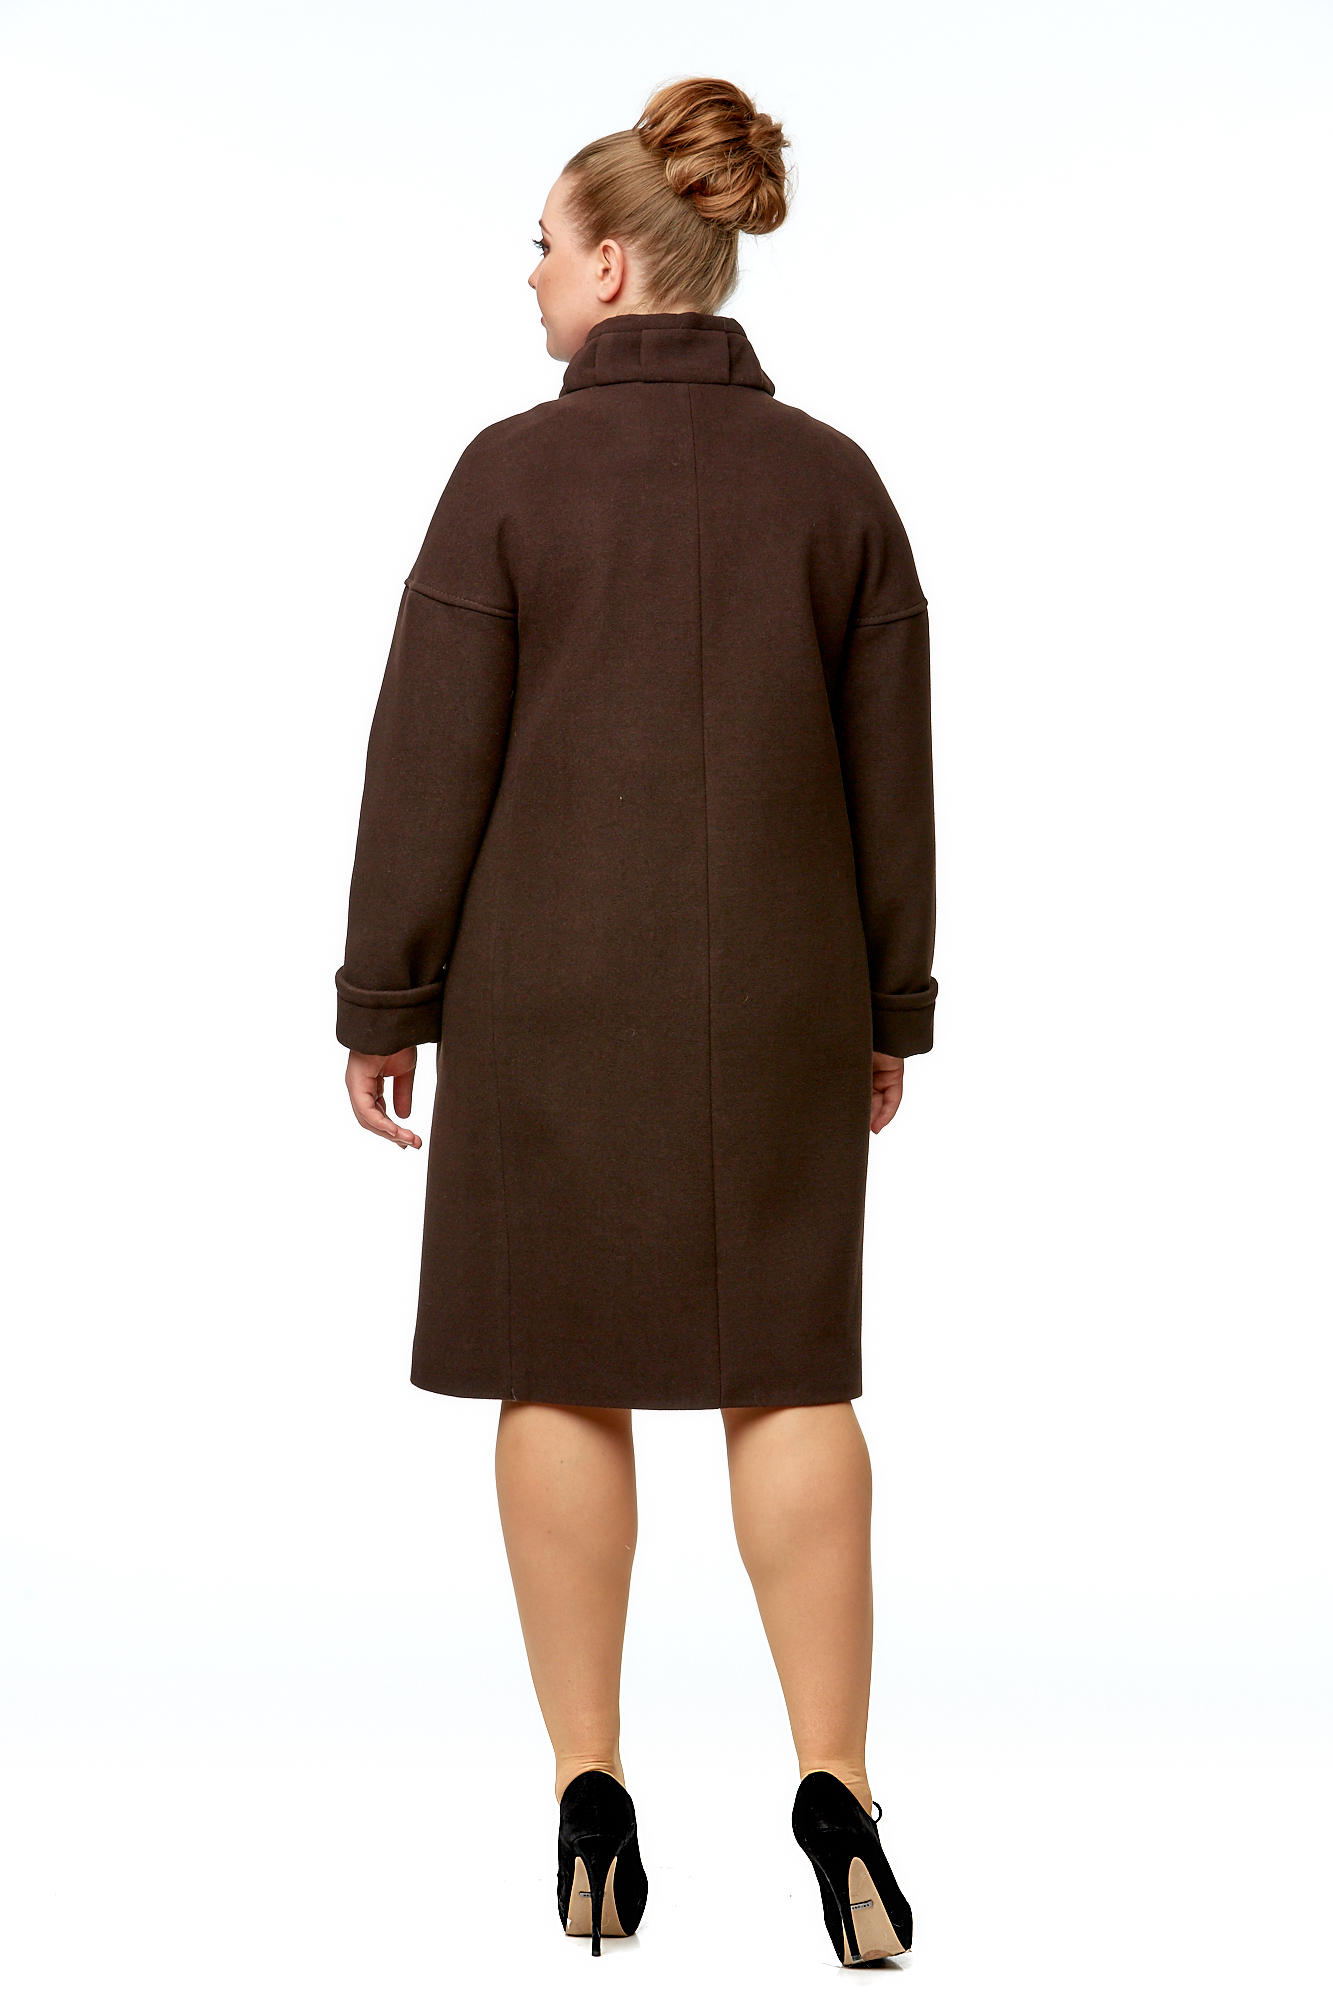 Женское пальто из текстиля с воротником 8000961-3